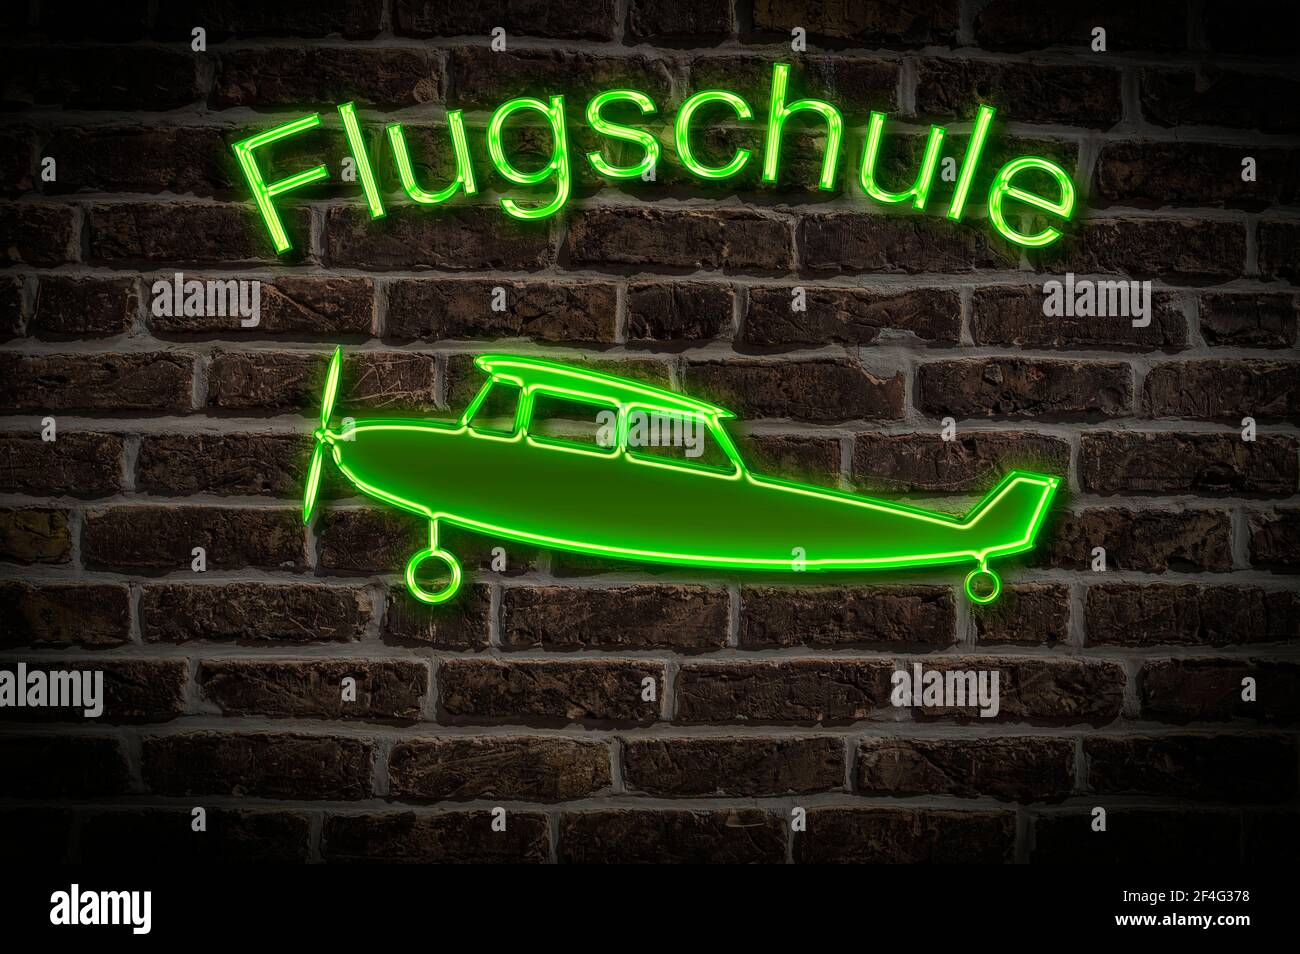 Leuchttreklame für eine Flugschule ein Flugzeug befindet sich in der Neon-Schrift Leuchtwerbung für eine Flugschule ein Flugzeug Ist Stockfoto